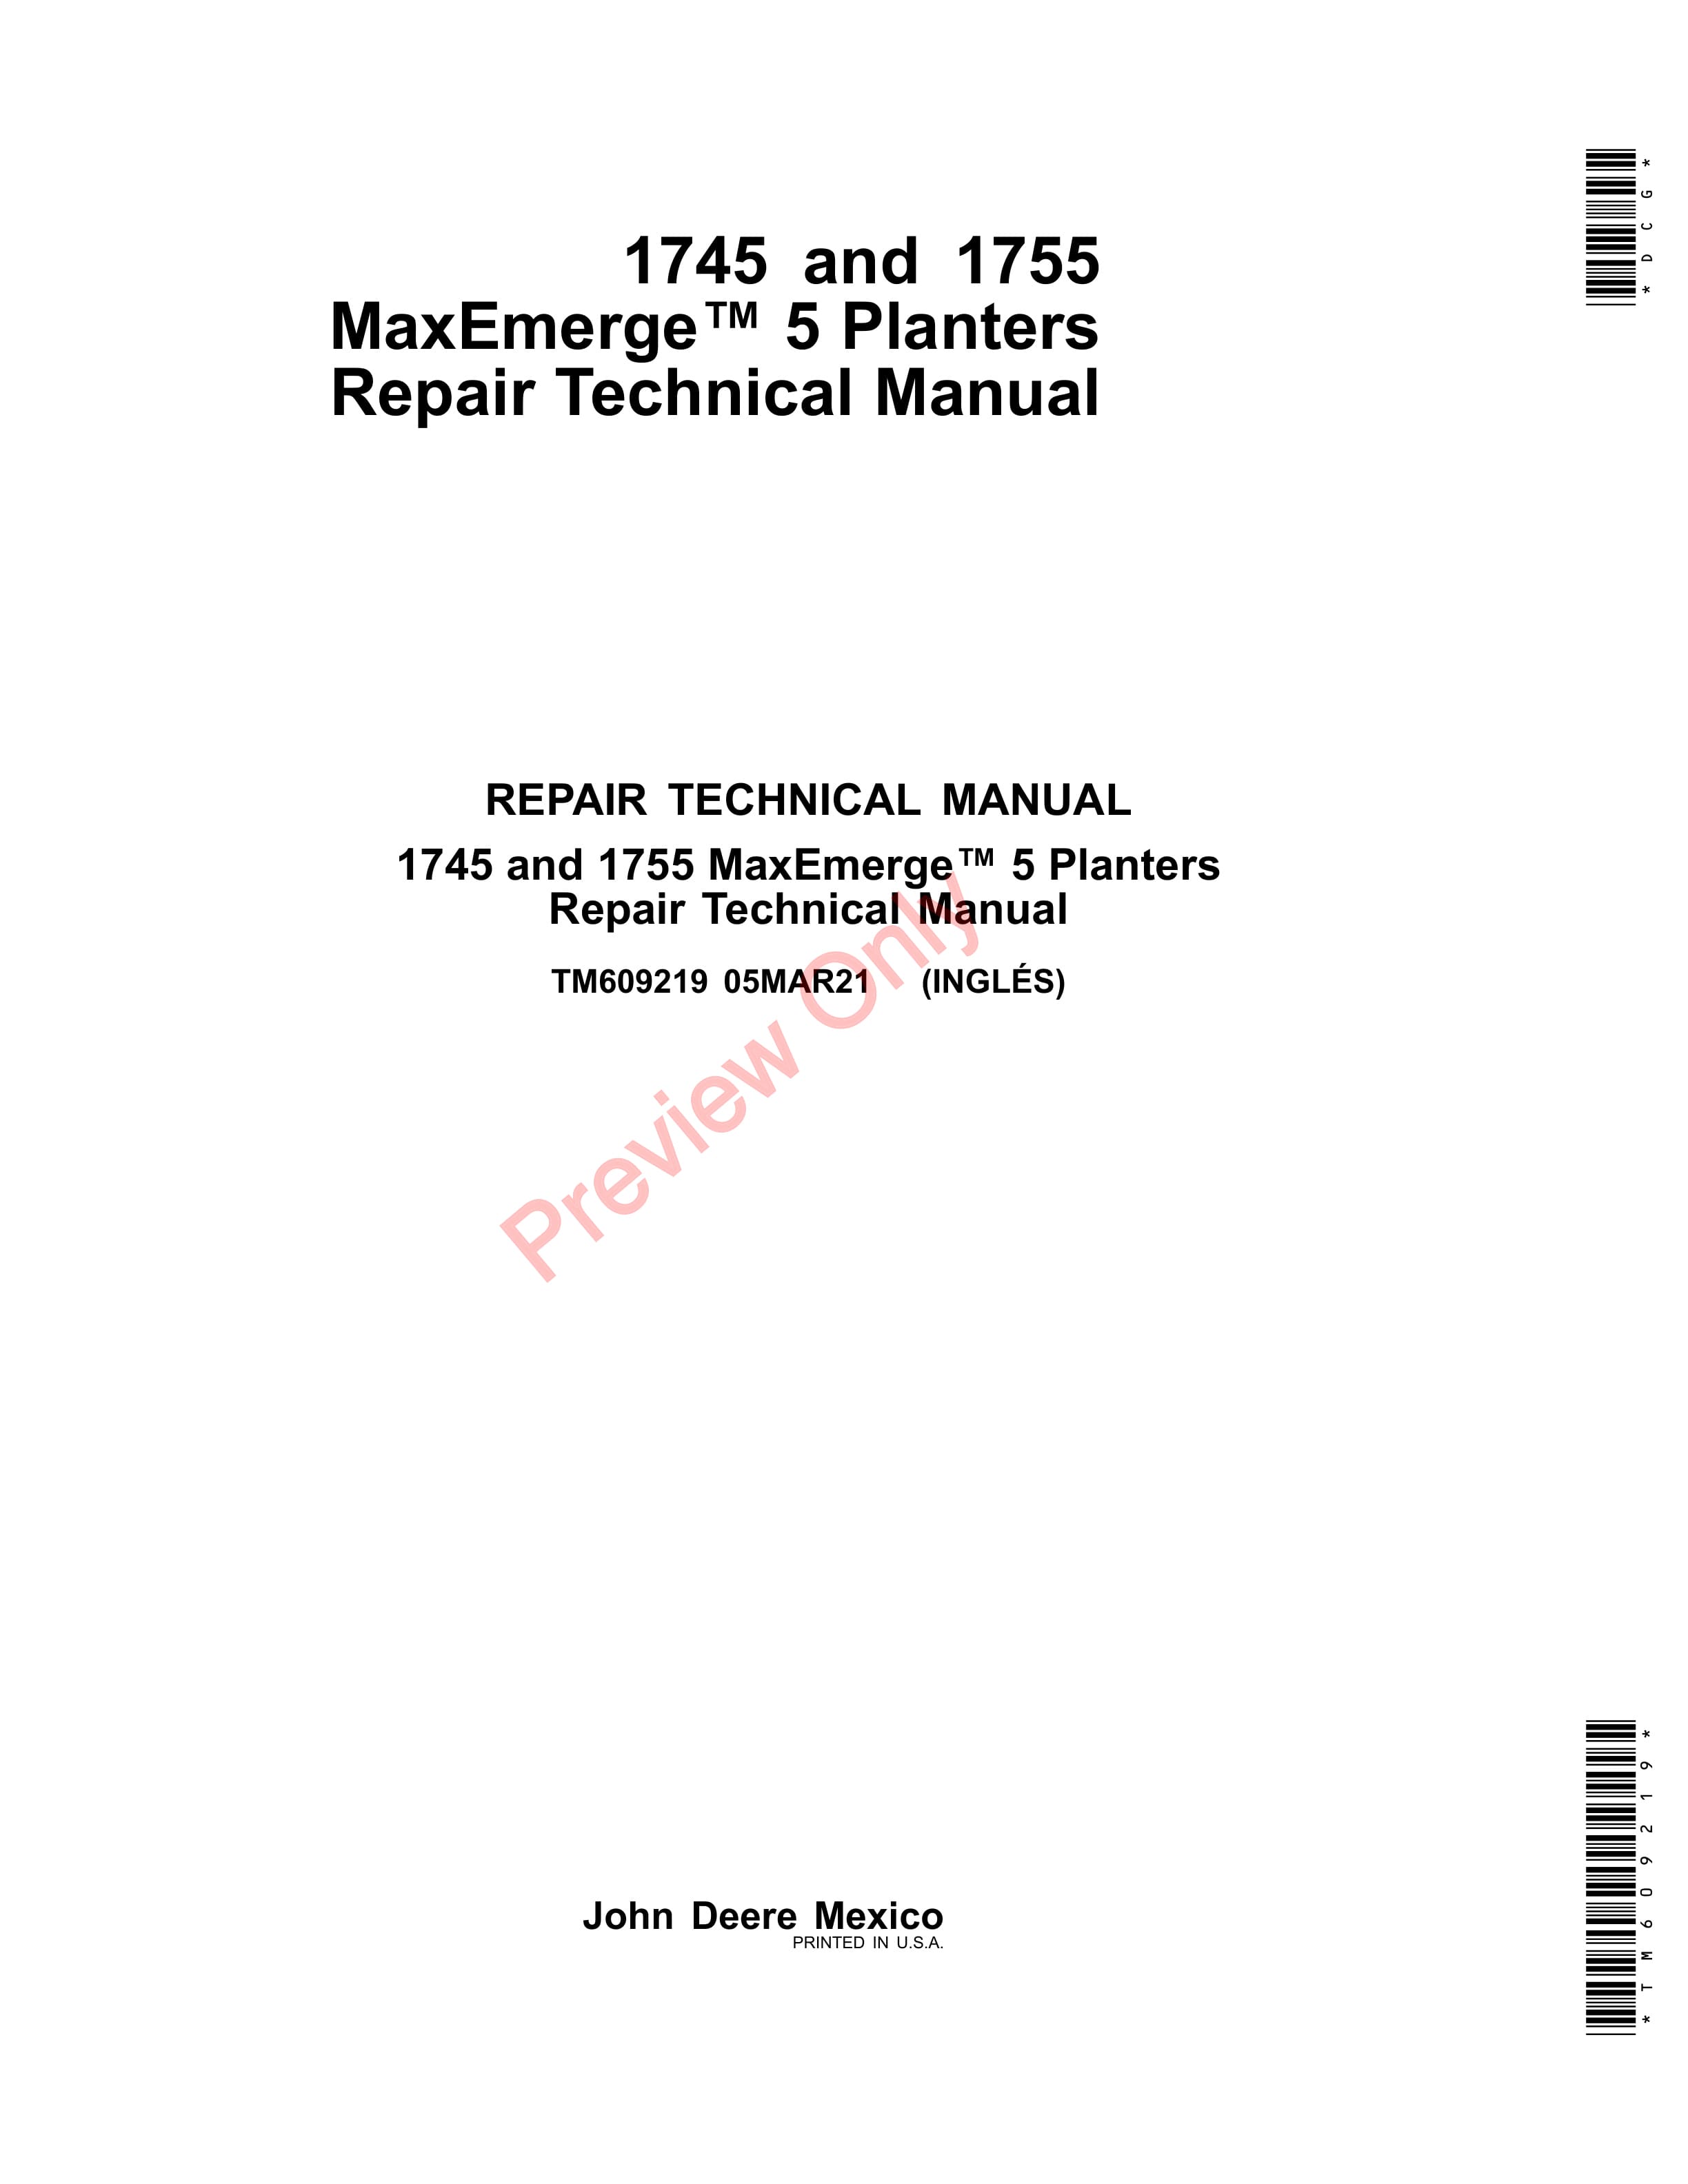 John Deere 1745 and 1755 MaxEmerge 5 Planters Repair Technical Manual TM609219 05MAR21 1